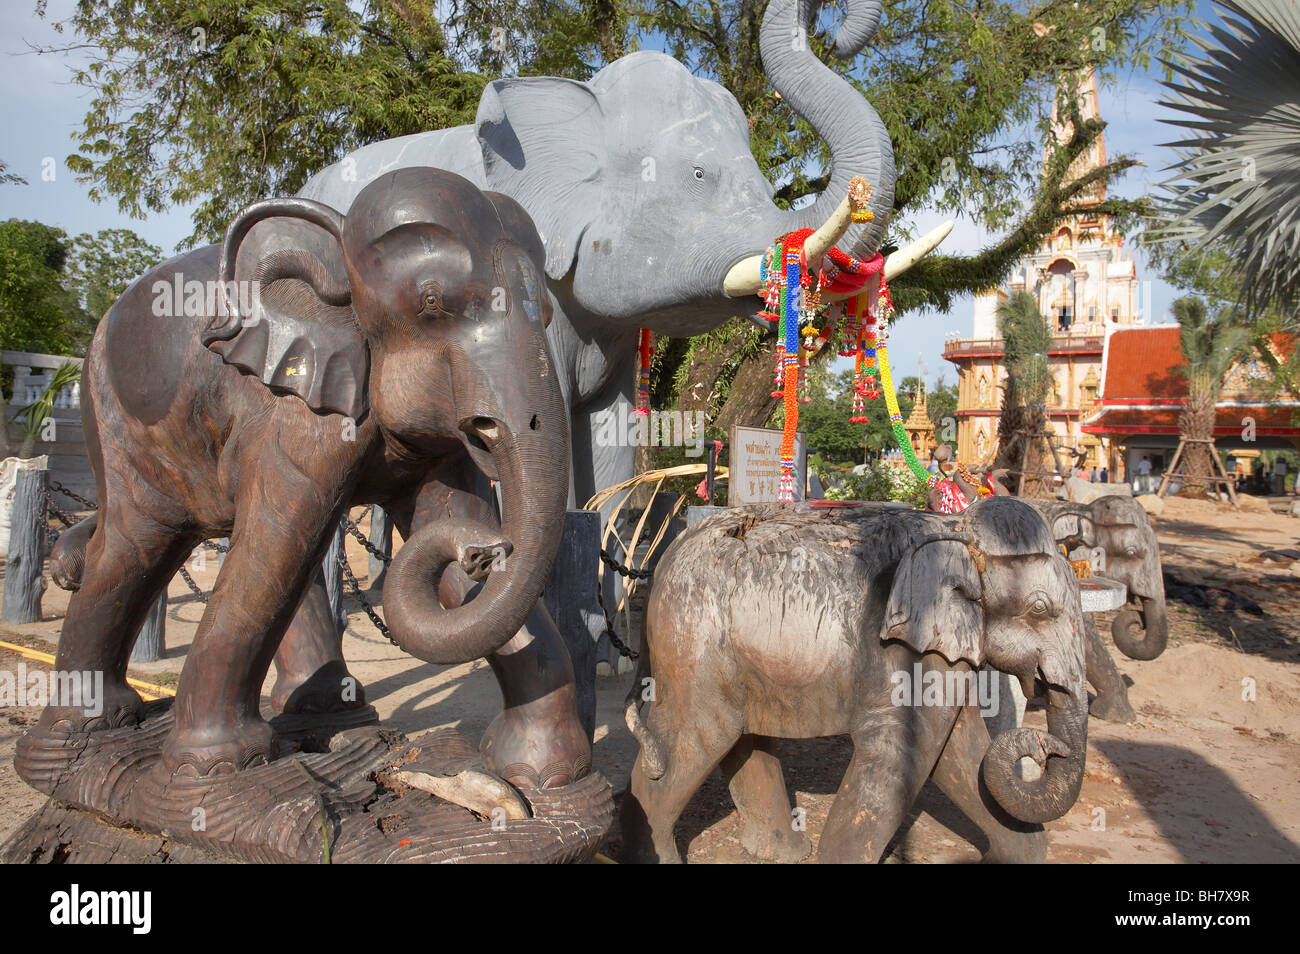 Los elefantes de madera en un templo budista, Tailandia Foto de stock